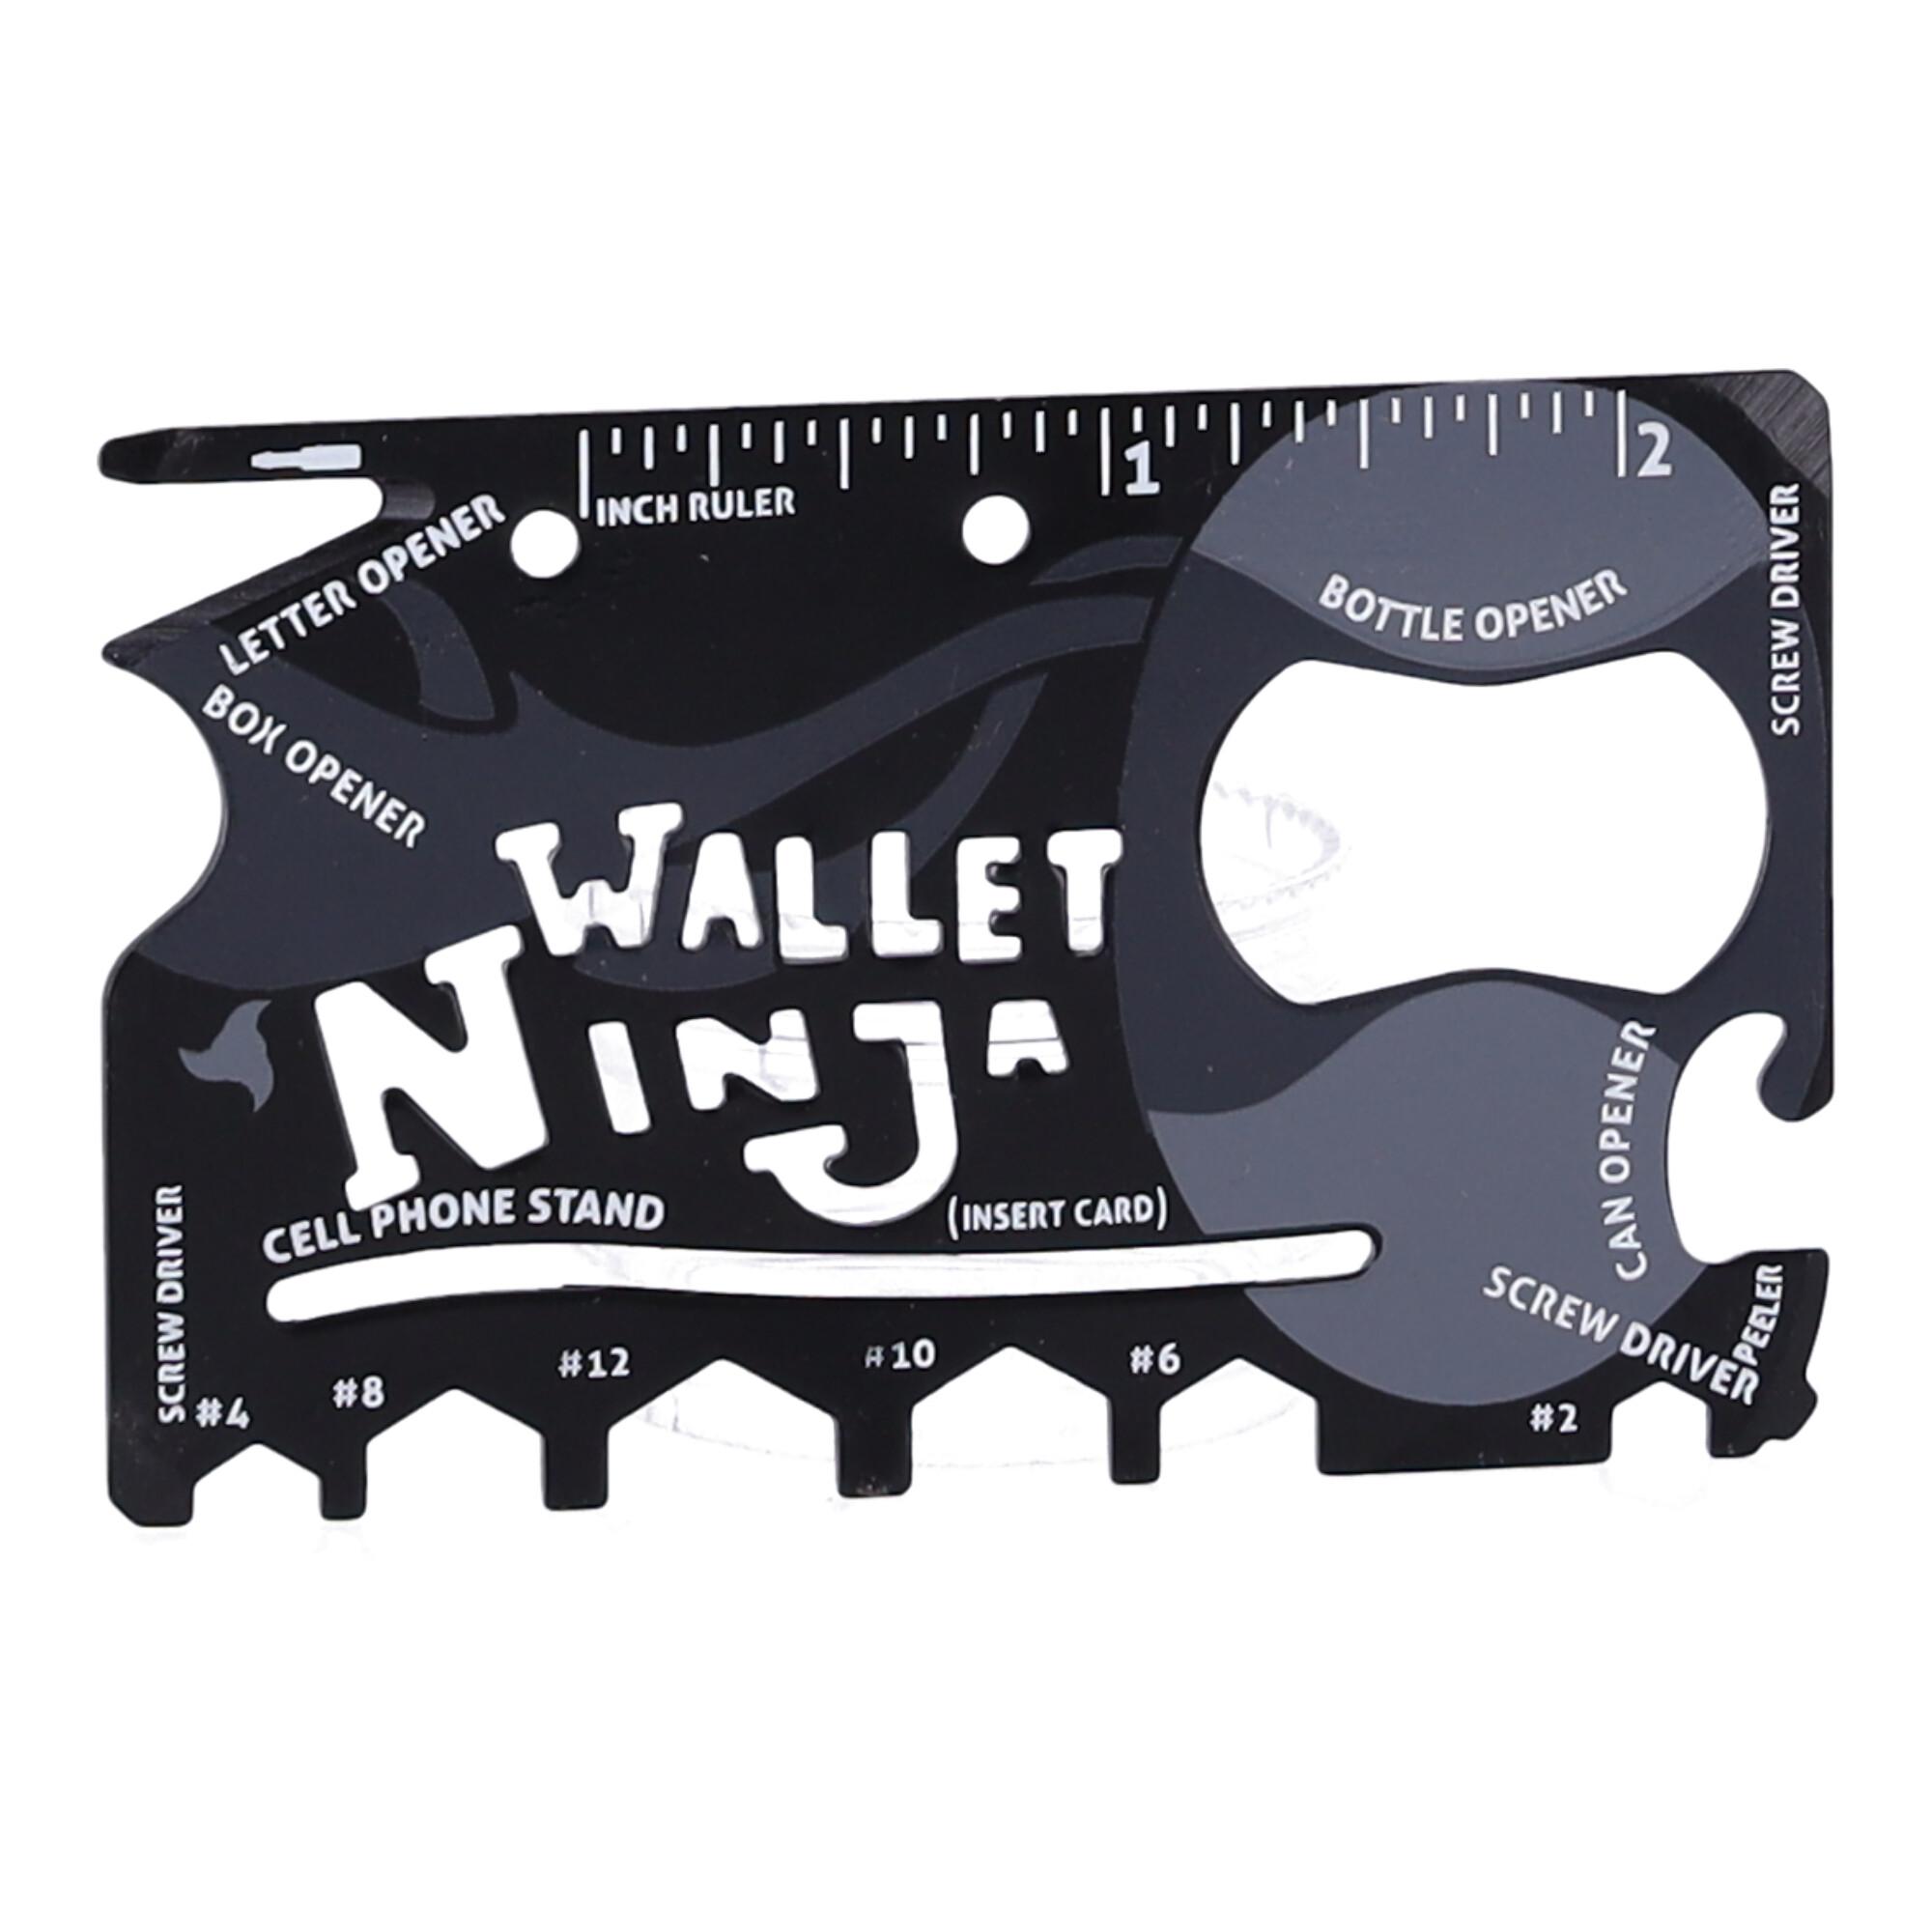 Wallet Ninja Survival Card, Multitool 18in1